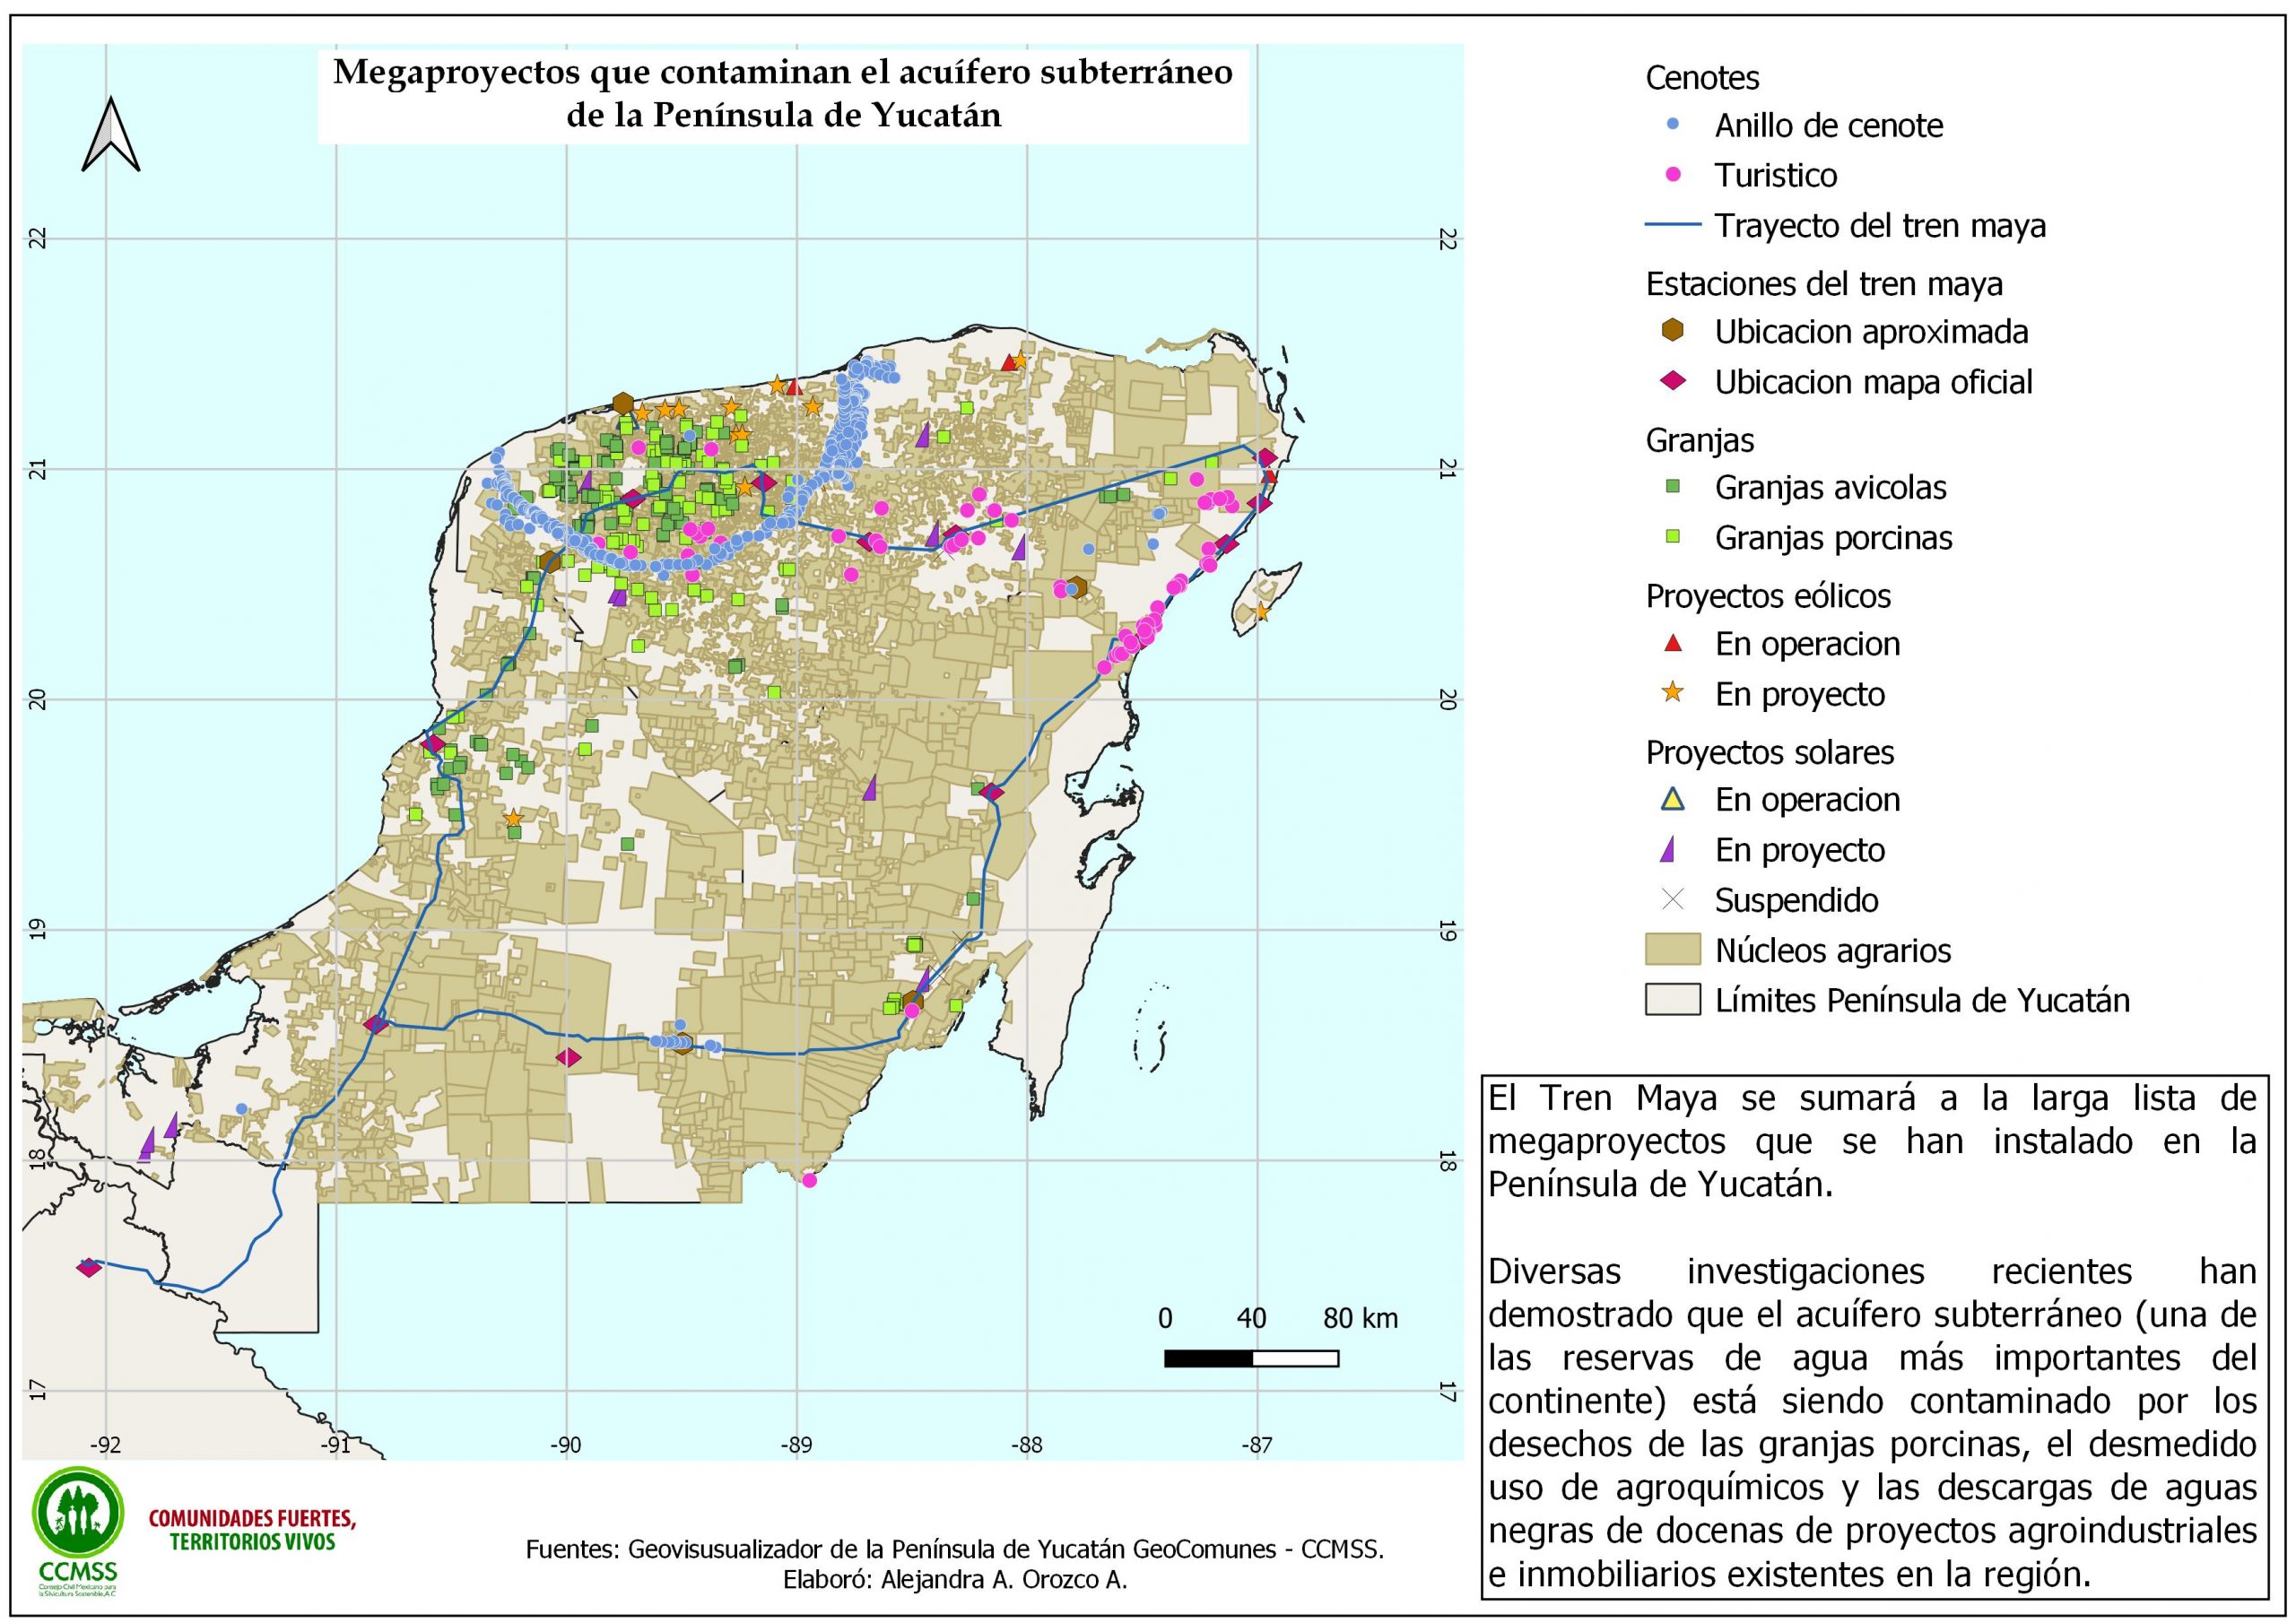 Los megaproyectos y el acuífero subterráneo de la Península de Yucatán